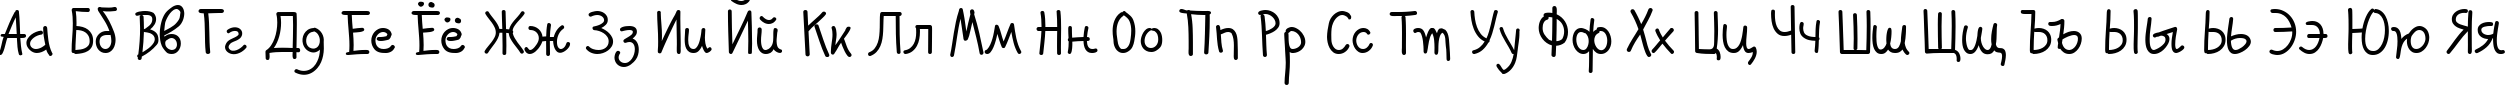 Пример написания русского алфавита шрифтом PFKidsPro-GradeFive